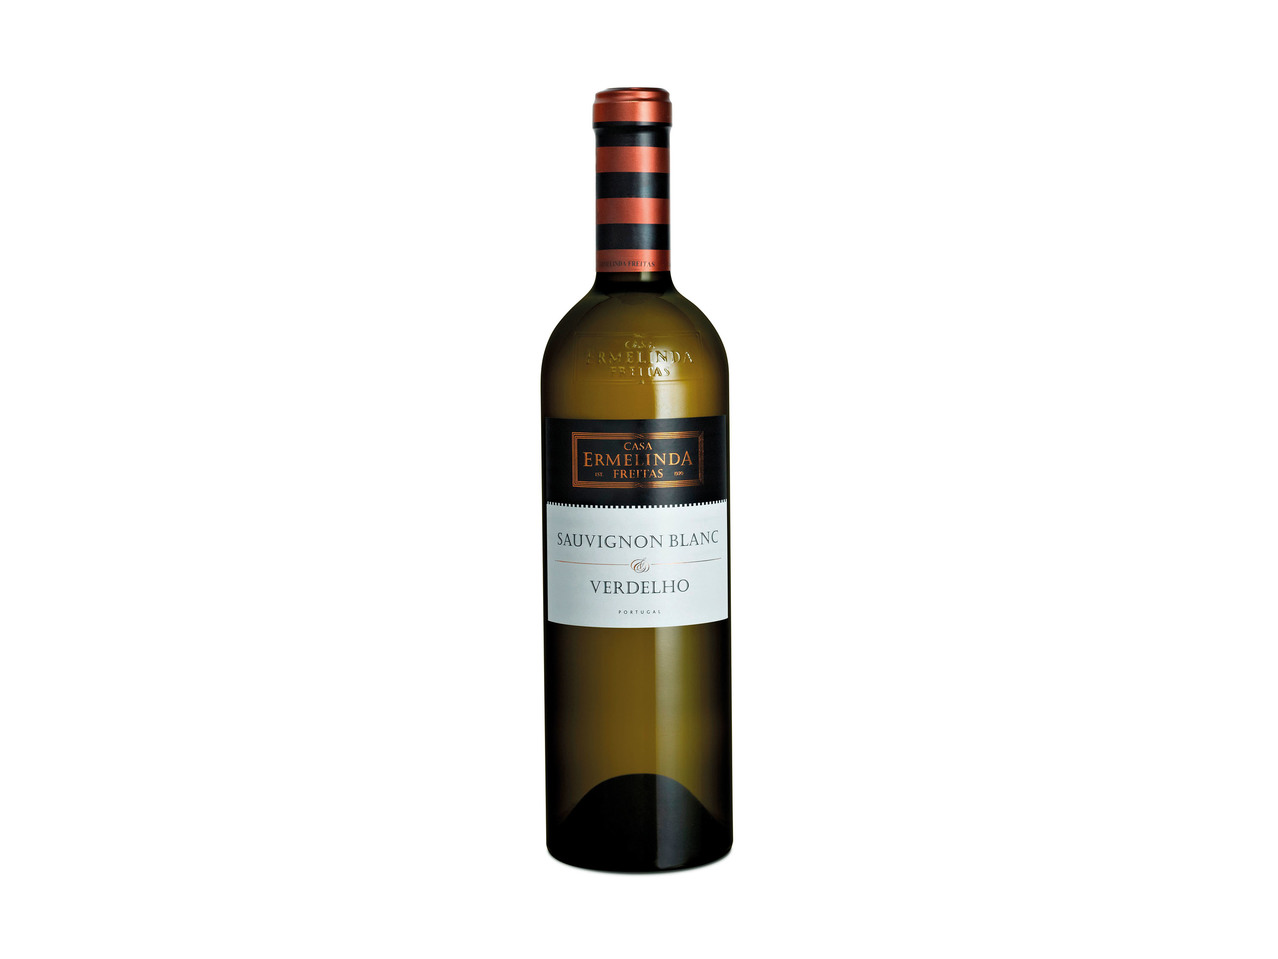 DONA ERMELINDA(R) Vinho Branco Sauvignon Blanc/ Verdelho Península de Setúbal